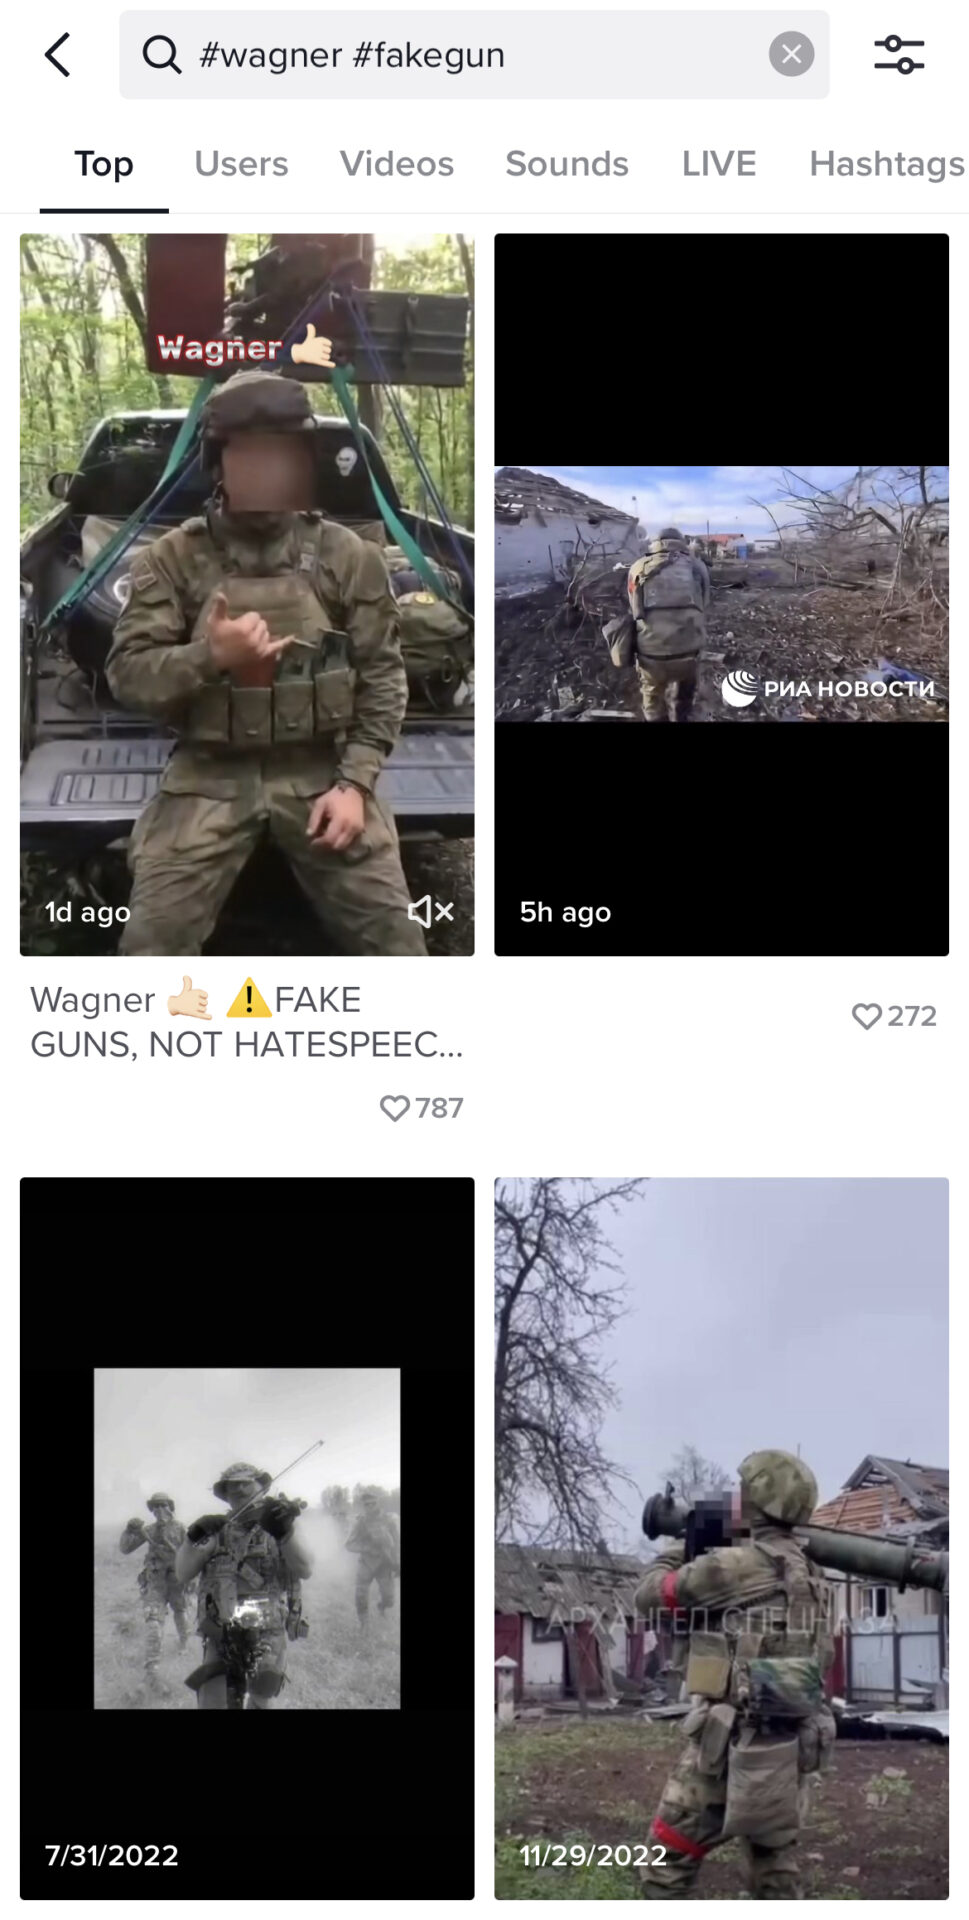 Wyszukane hasztagi #wagner i #fakegun na zrzucie ekranu z aplikacji TikTok. W wynikach wyszukiwania pojawiają się filmy ukazujące żołnierzy podczas działań bojowych.